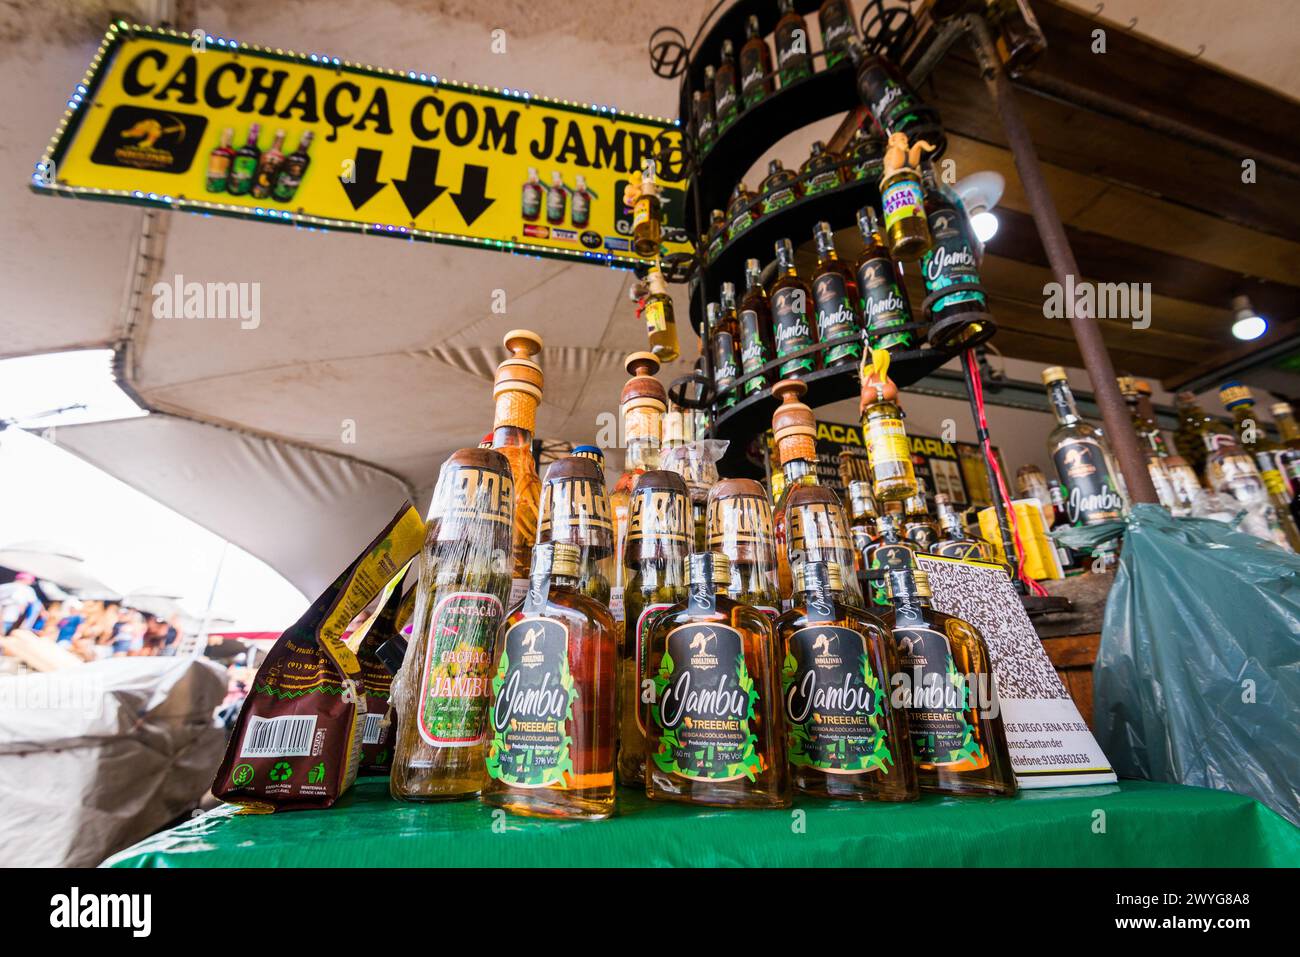 Belem, Brasilien - 26. Dezember 2023: Verschiedene alkoholische Getränke zum Verkauf auf dem Markt Ver o Peso. Der beliebteste ist Jambu Likör, der berühmt ist. Stockfoto